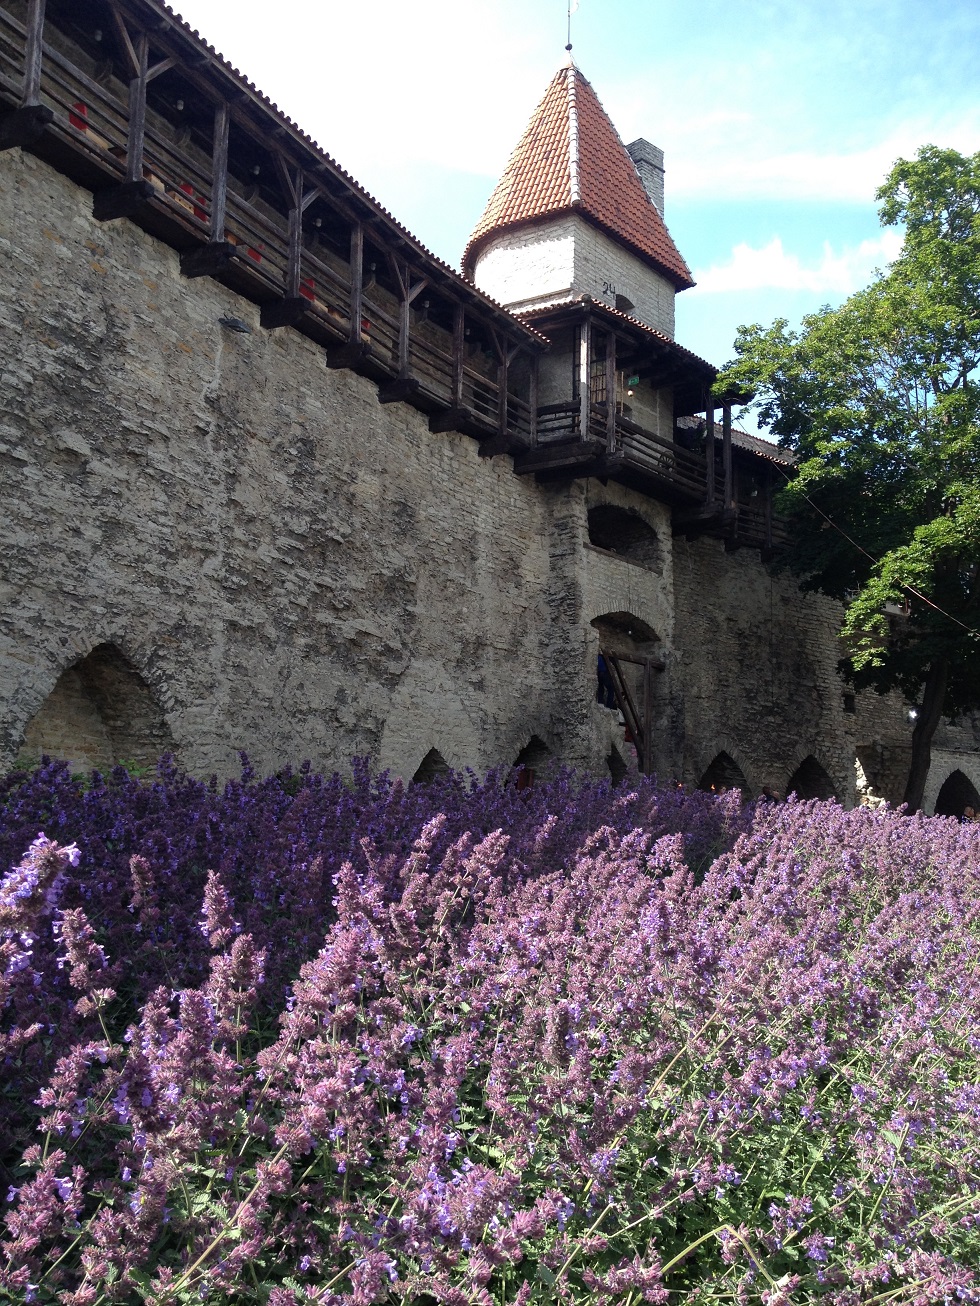 Reise durch die Zeit: vorbei an den historischen Stadtmauern in Tallinn